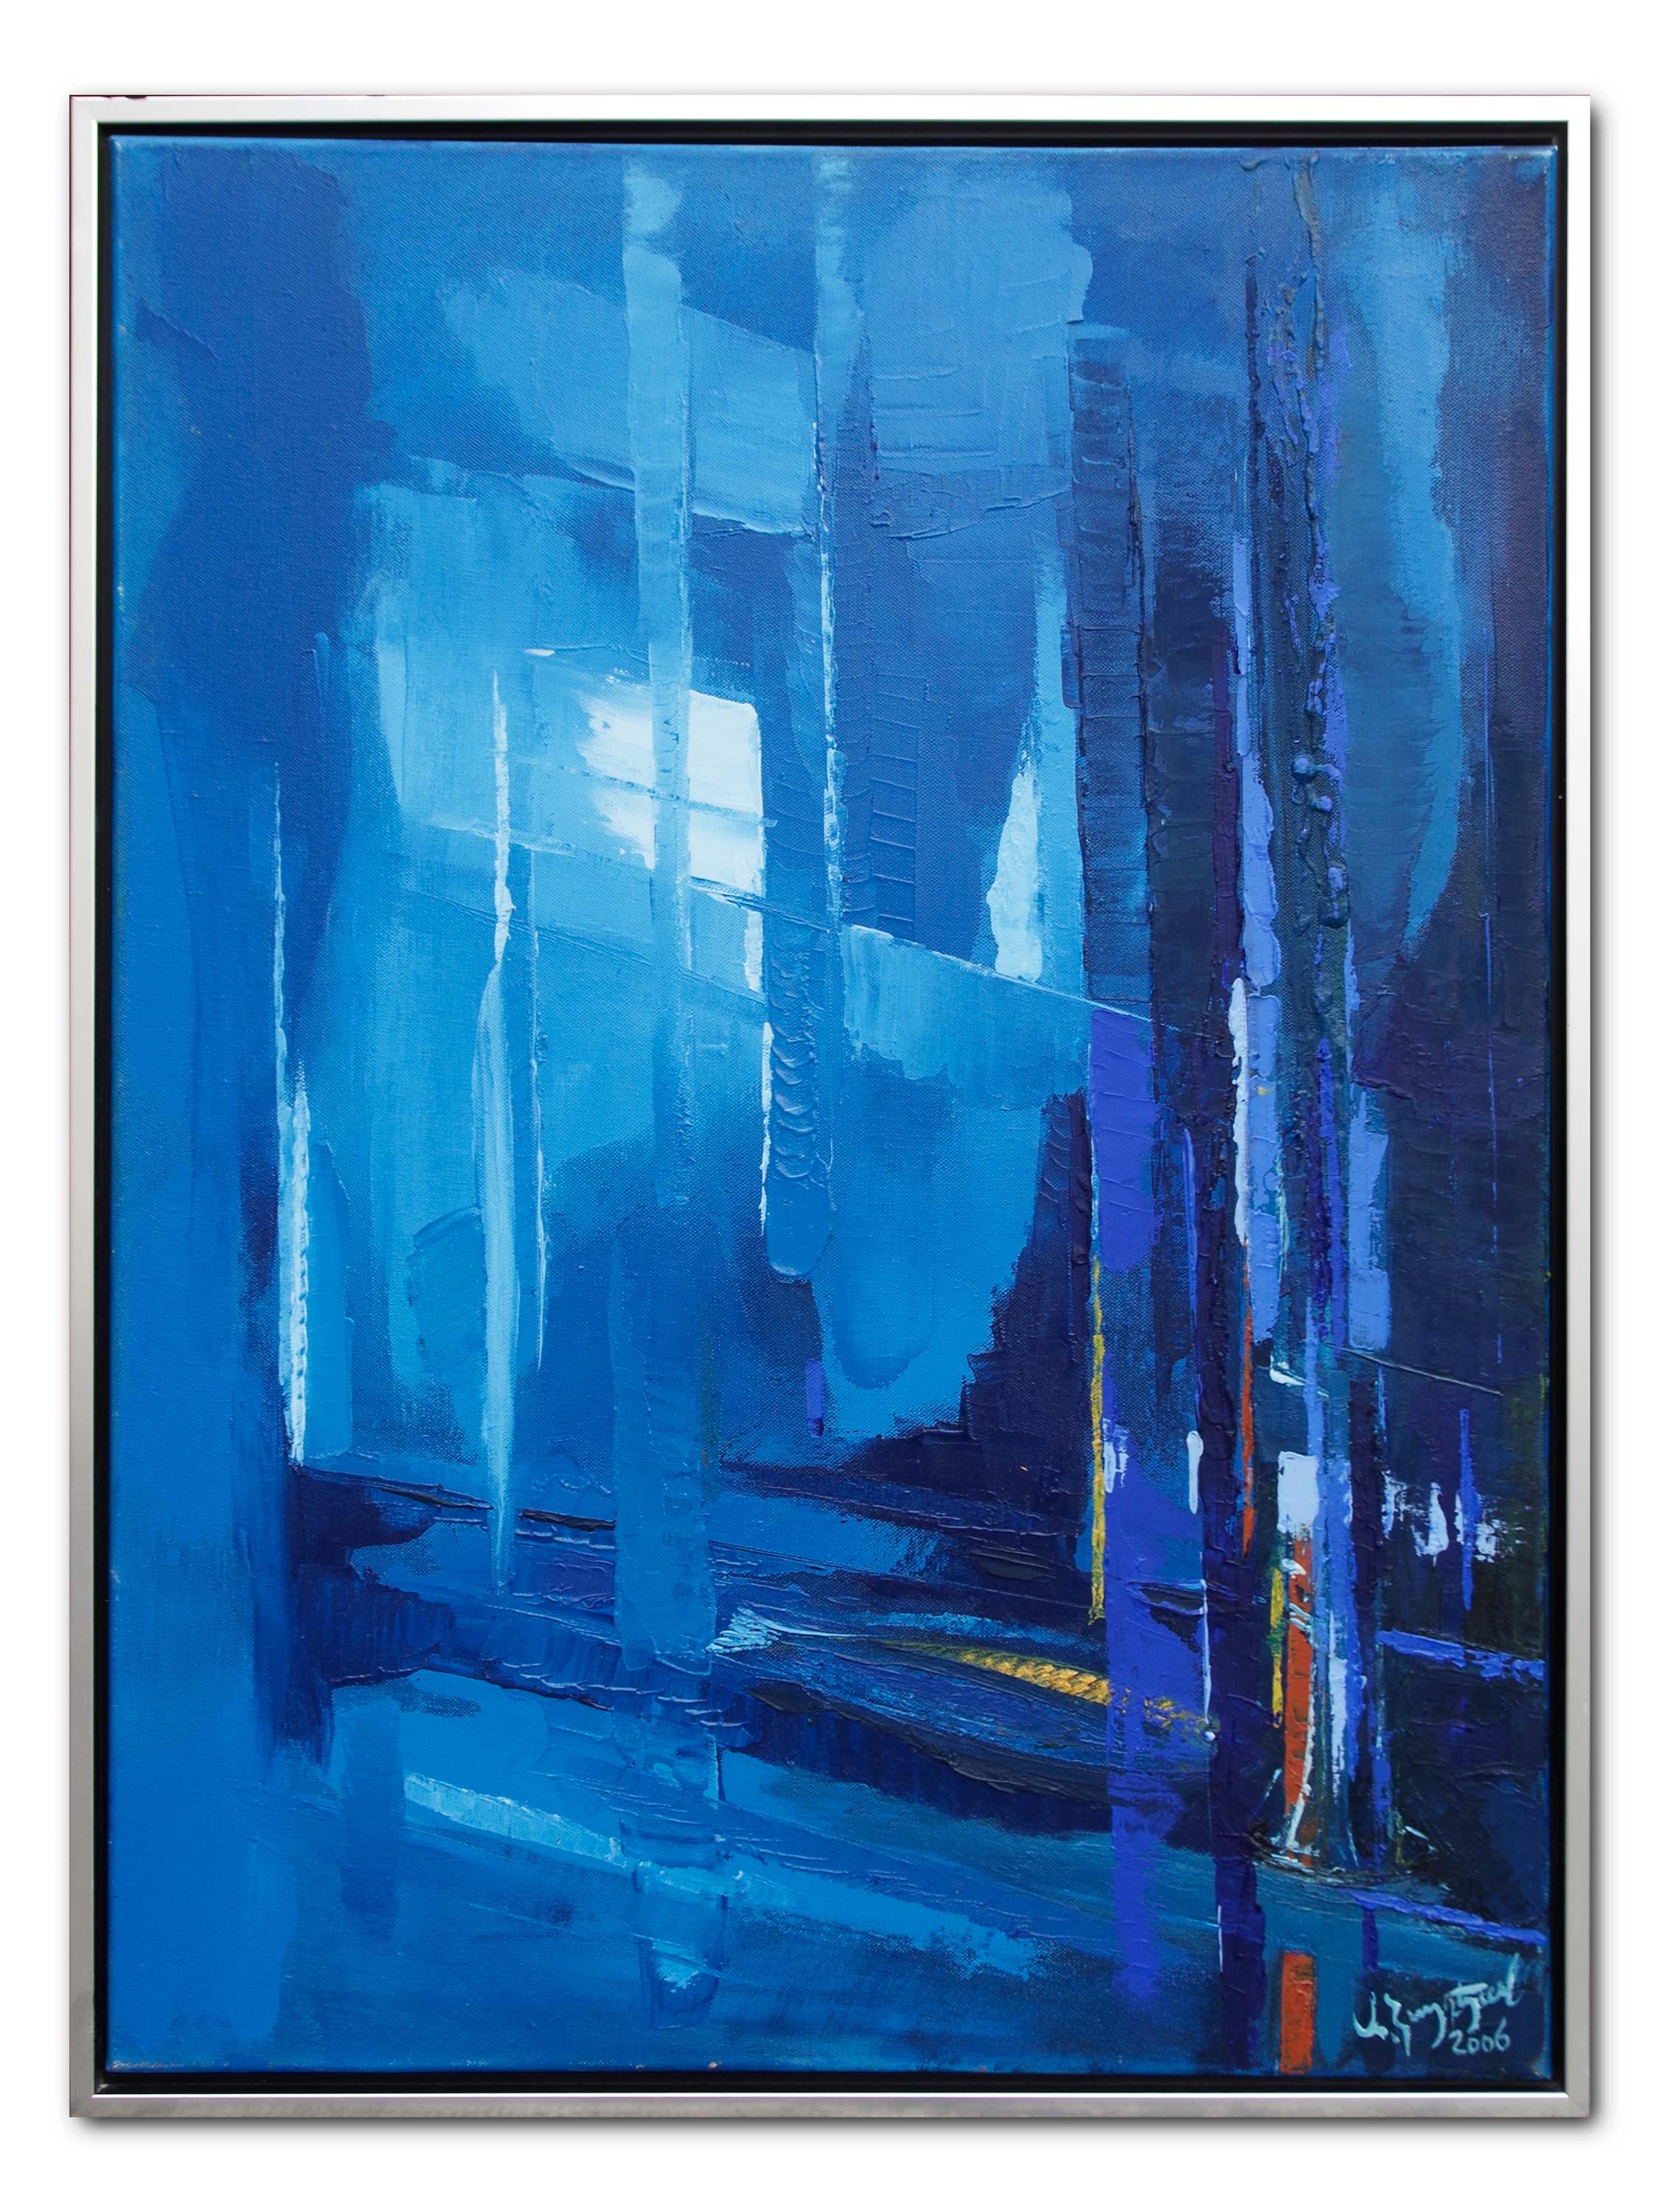 Rhapsudy in Blue. 2006. 60 x 80 cm%